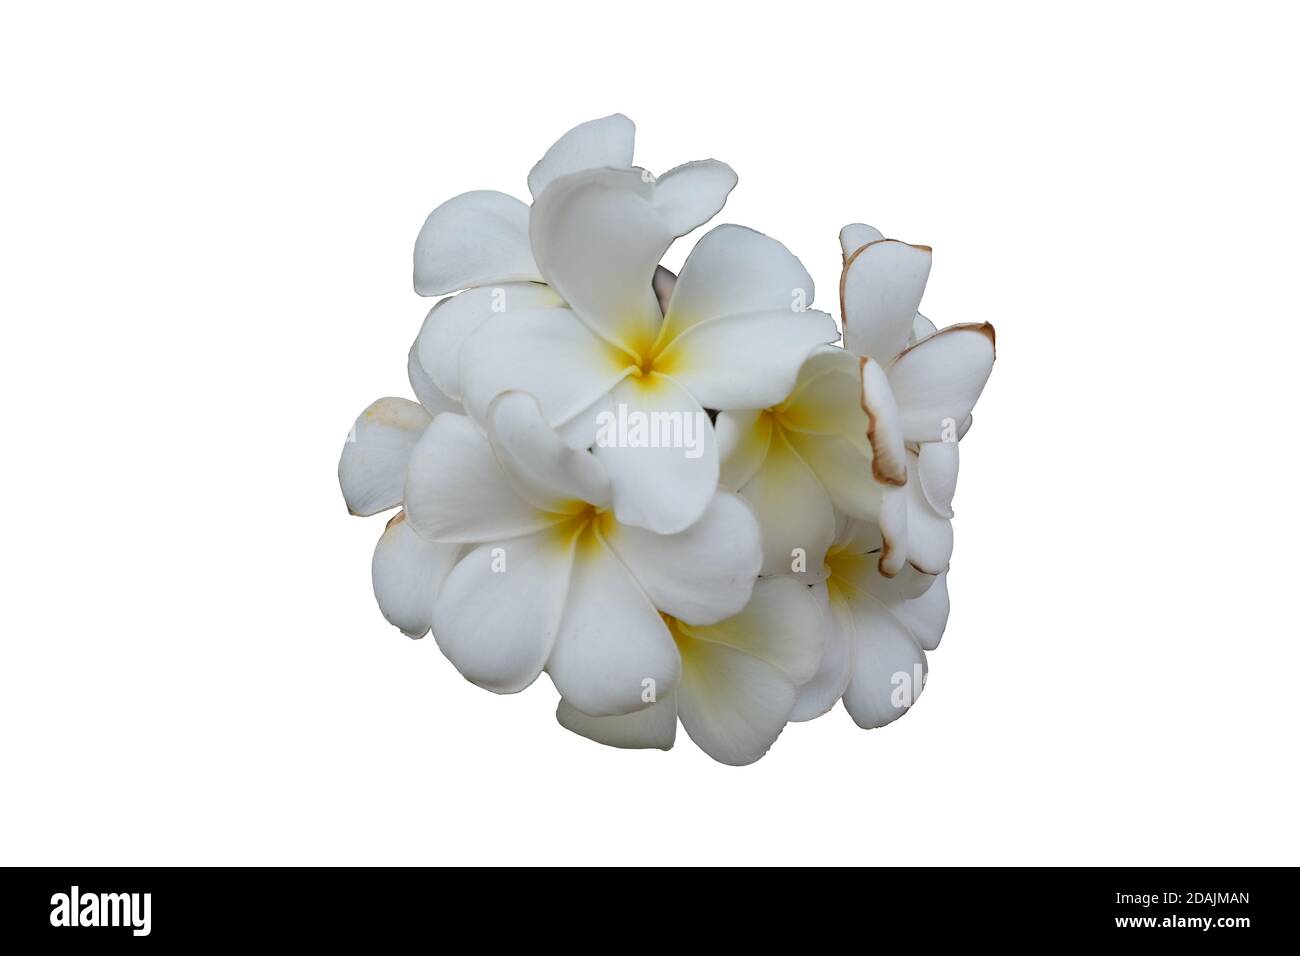 blütenstand aus weißen Blüten, weiße Blütenblätter mit gelber Mitte, isolierter, weißer Hintergrund Stockfoto